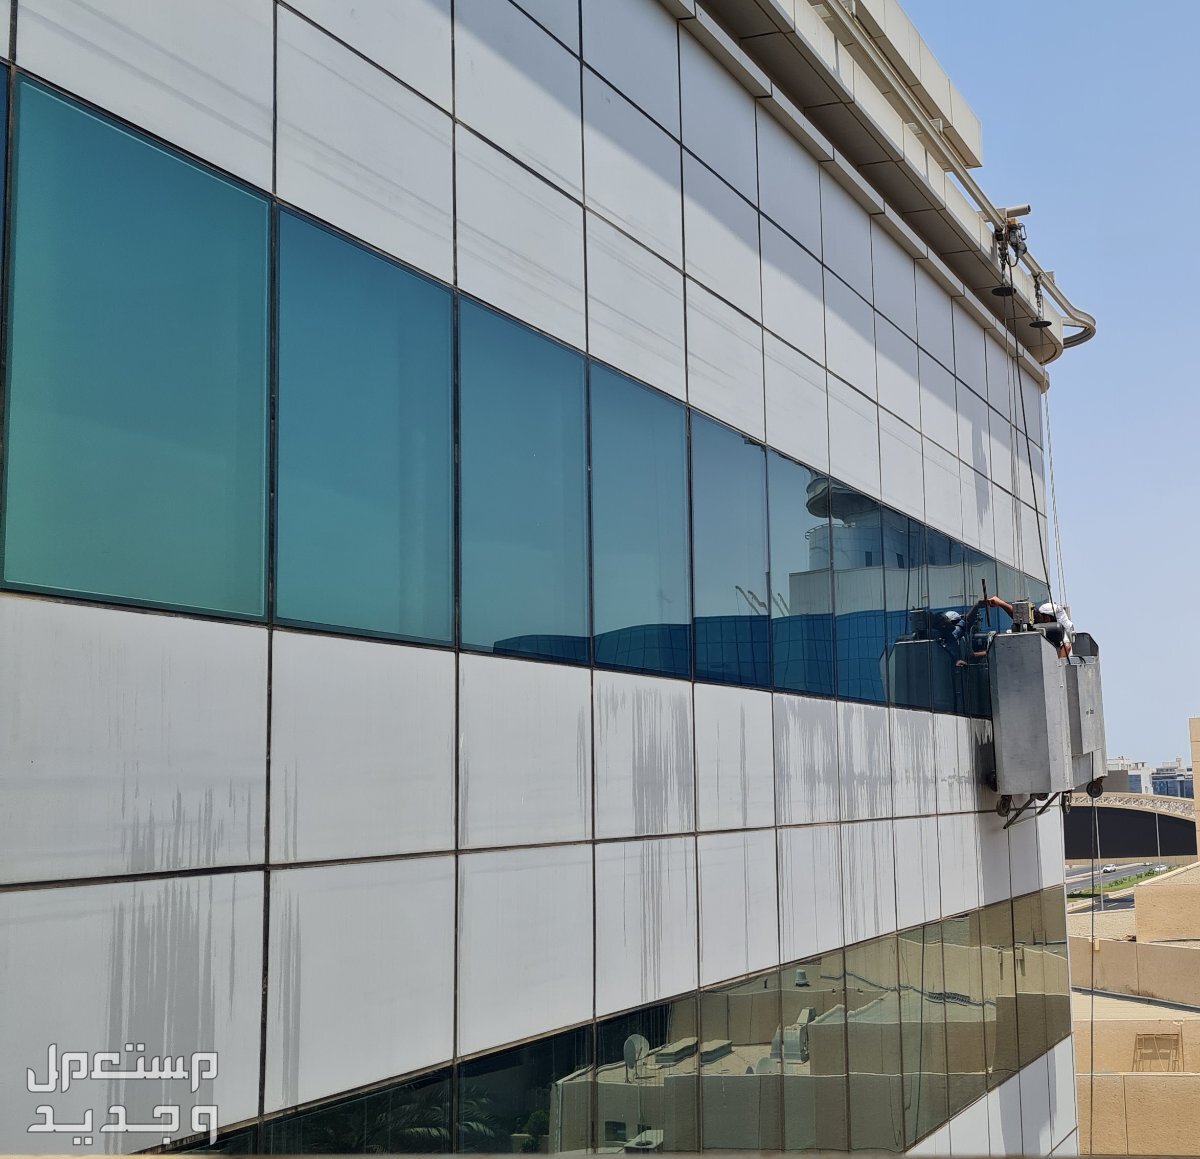 خدمات نظافة واجهات المباني الخارجية في جدة نظافة واجهات المباني الزجاجية في جدة، تلمبطيع واجهات المباني